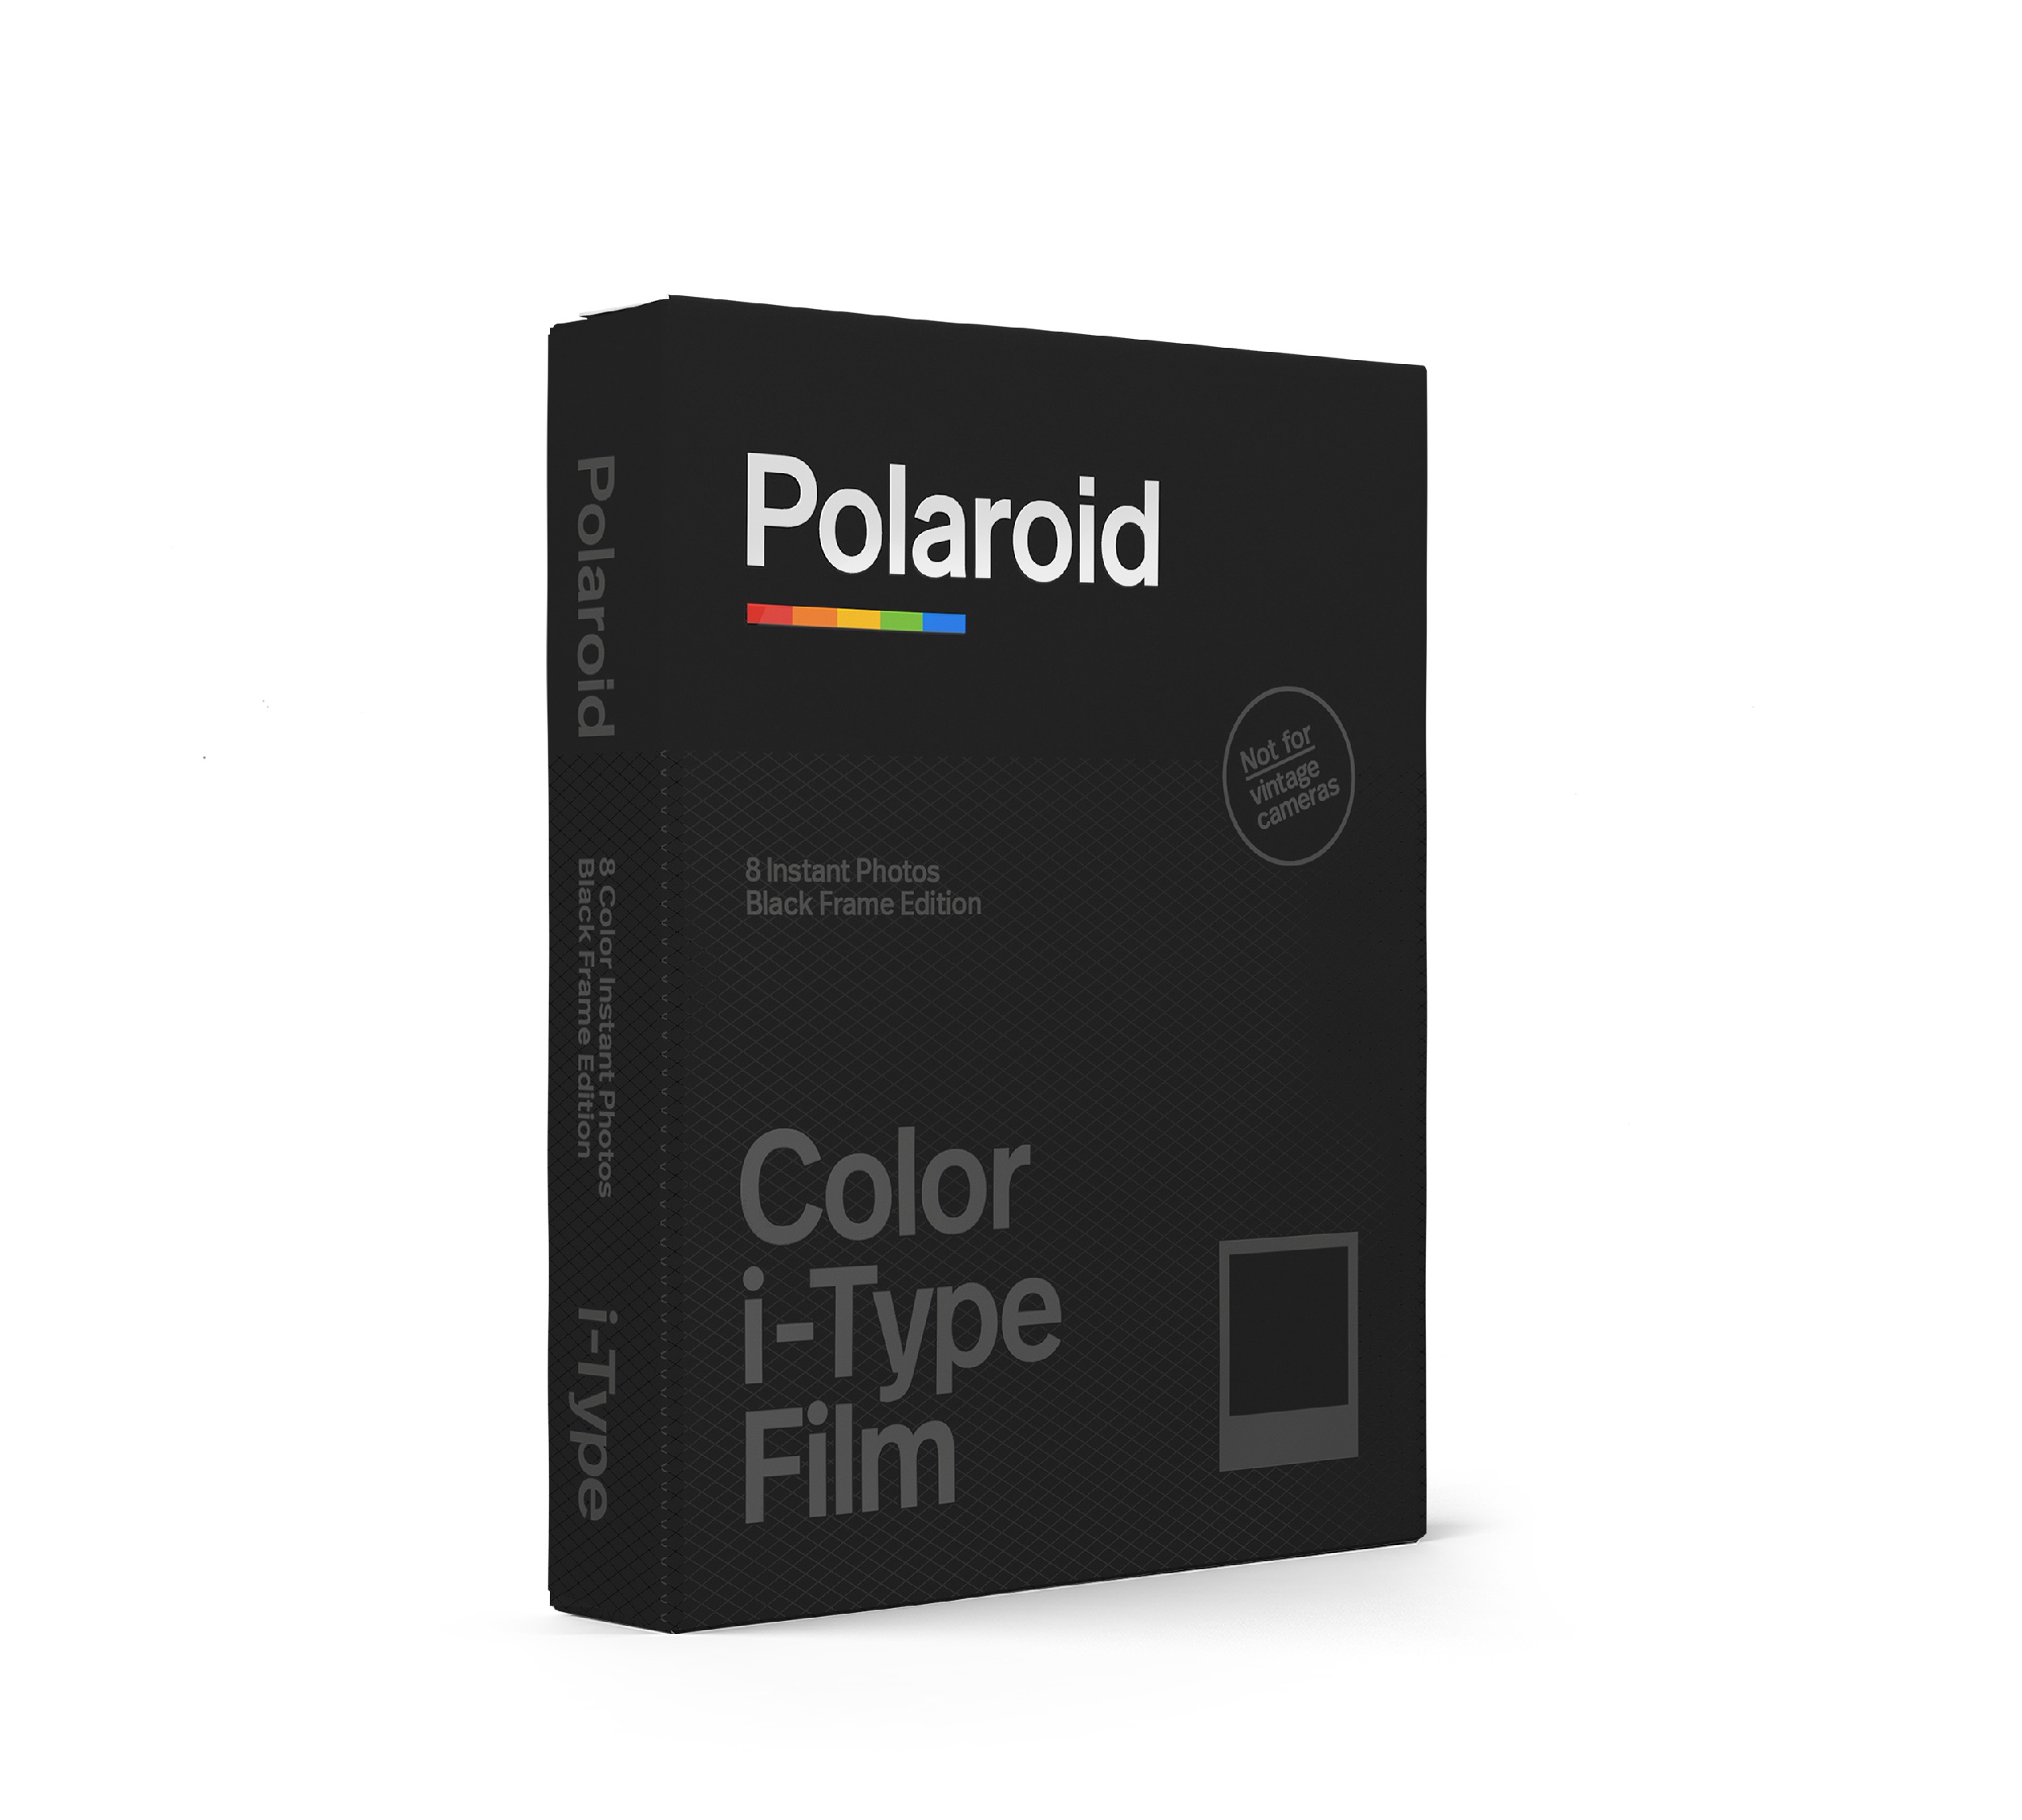 Color i-Type Black Frame Edition